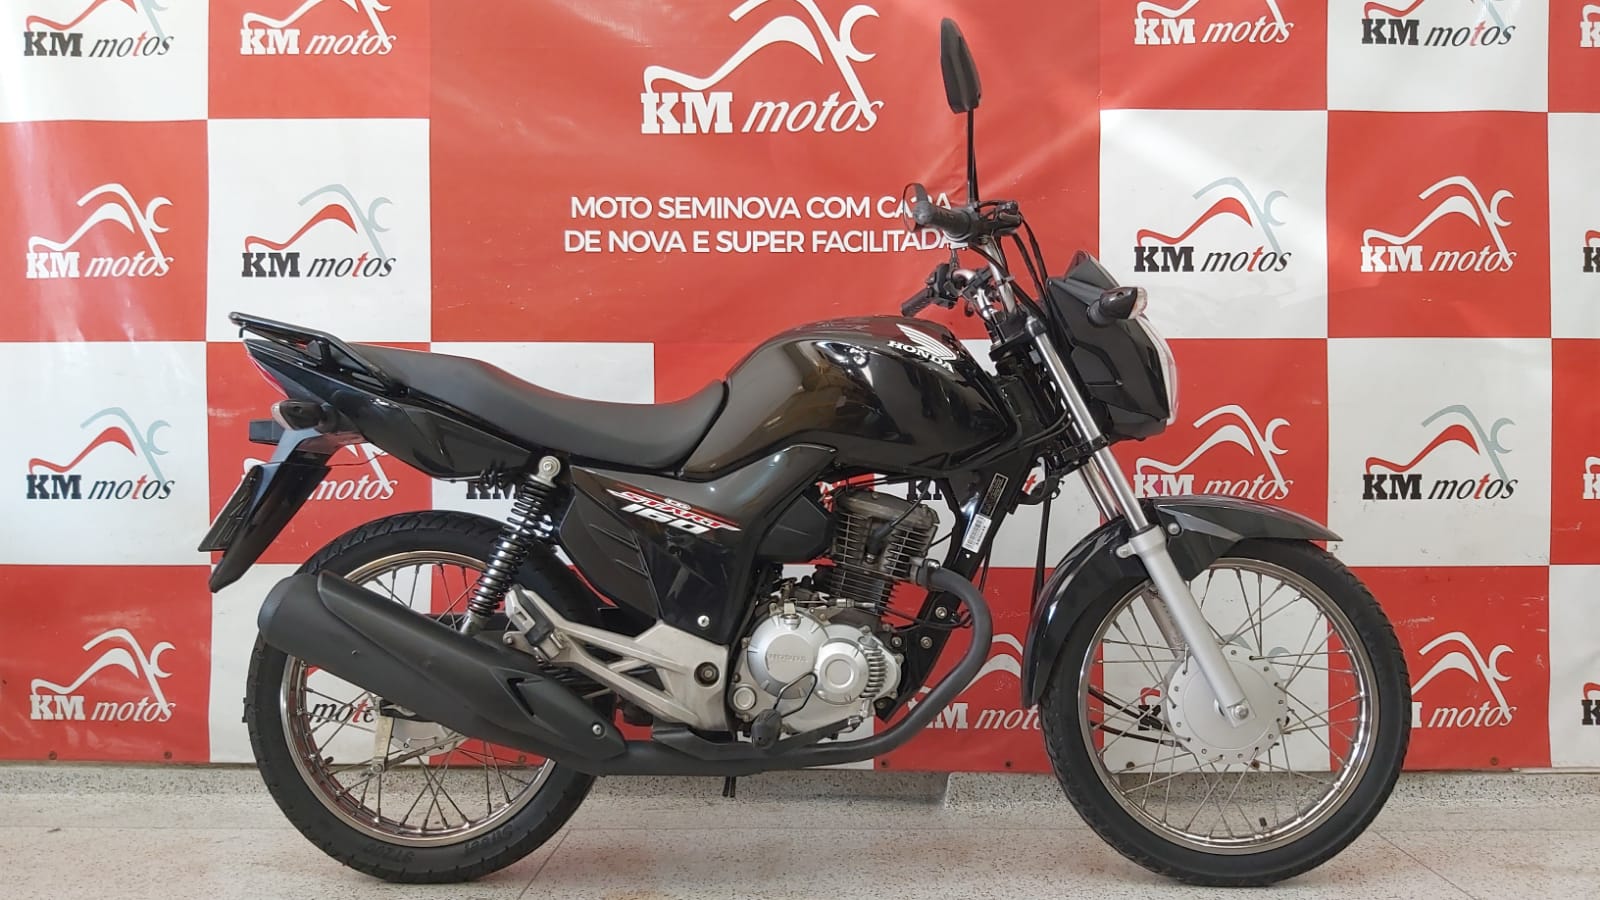 Honda Cg 160 Start 2019 Preta Km Motos Sua Loja De Motos Semi Novas 0069